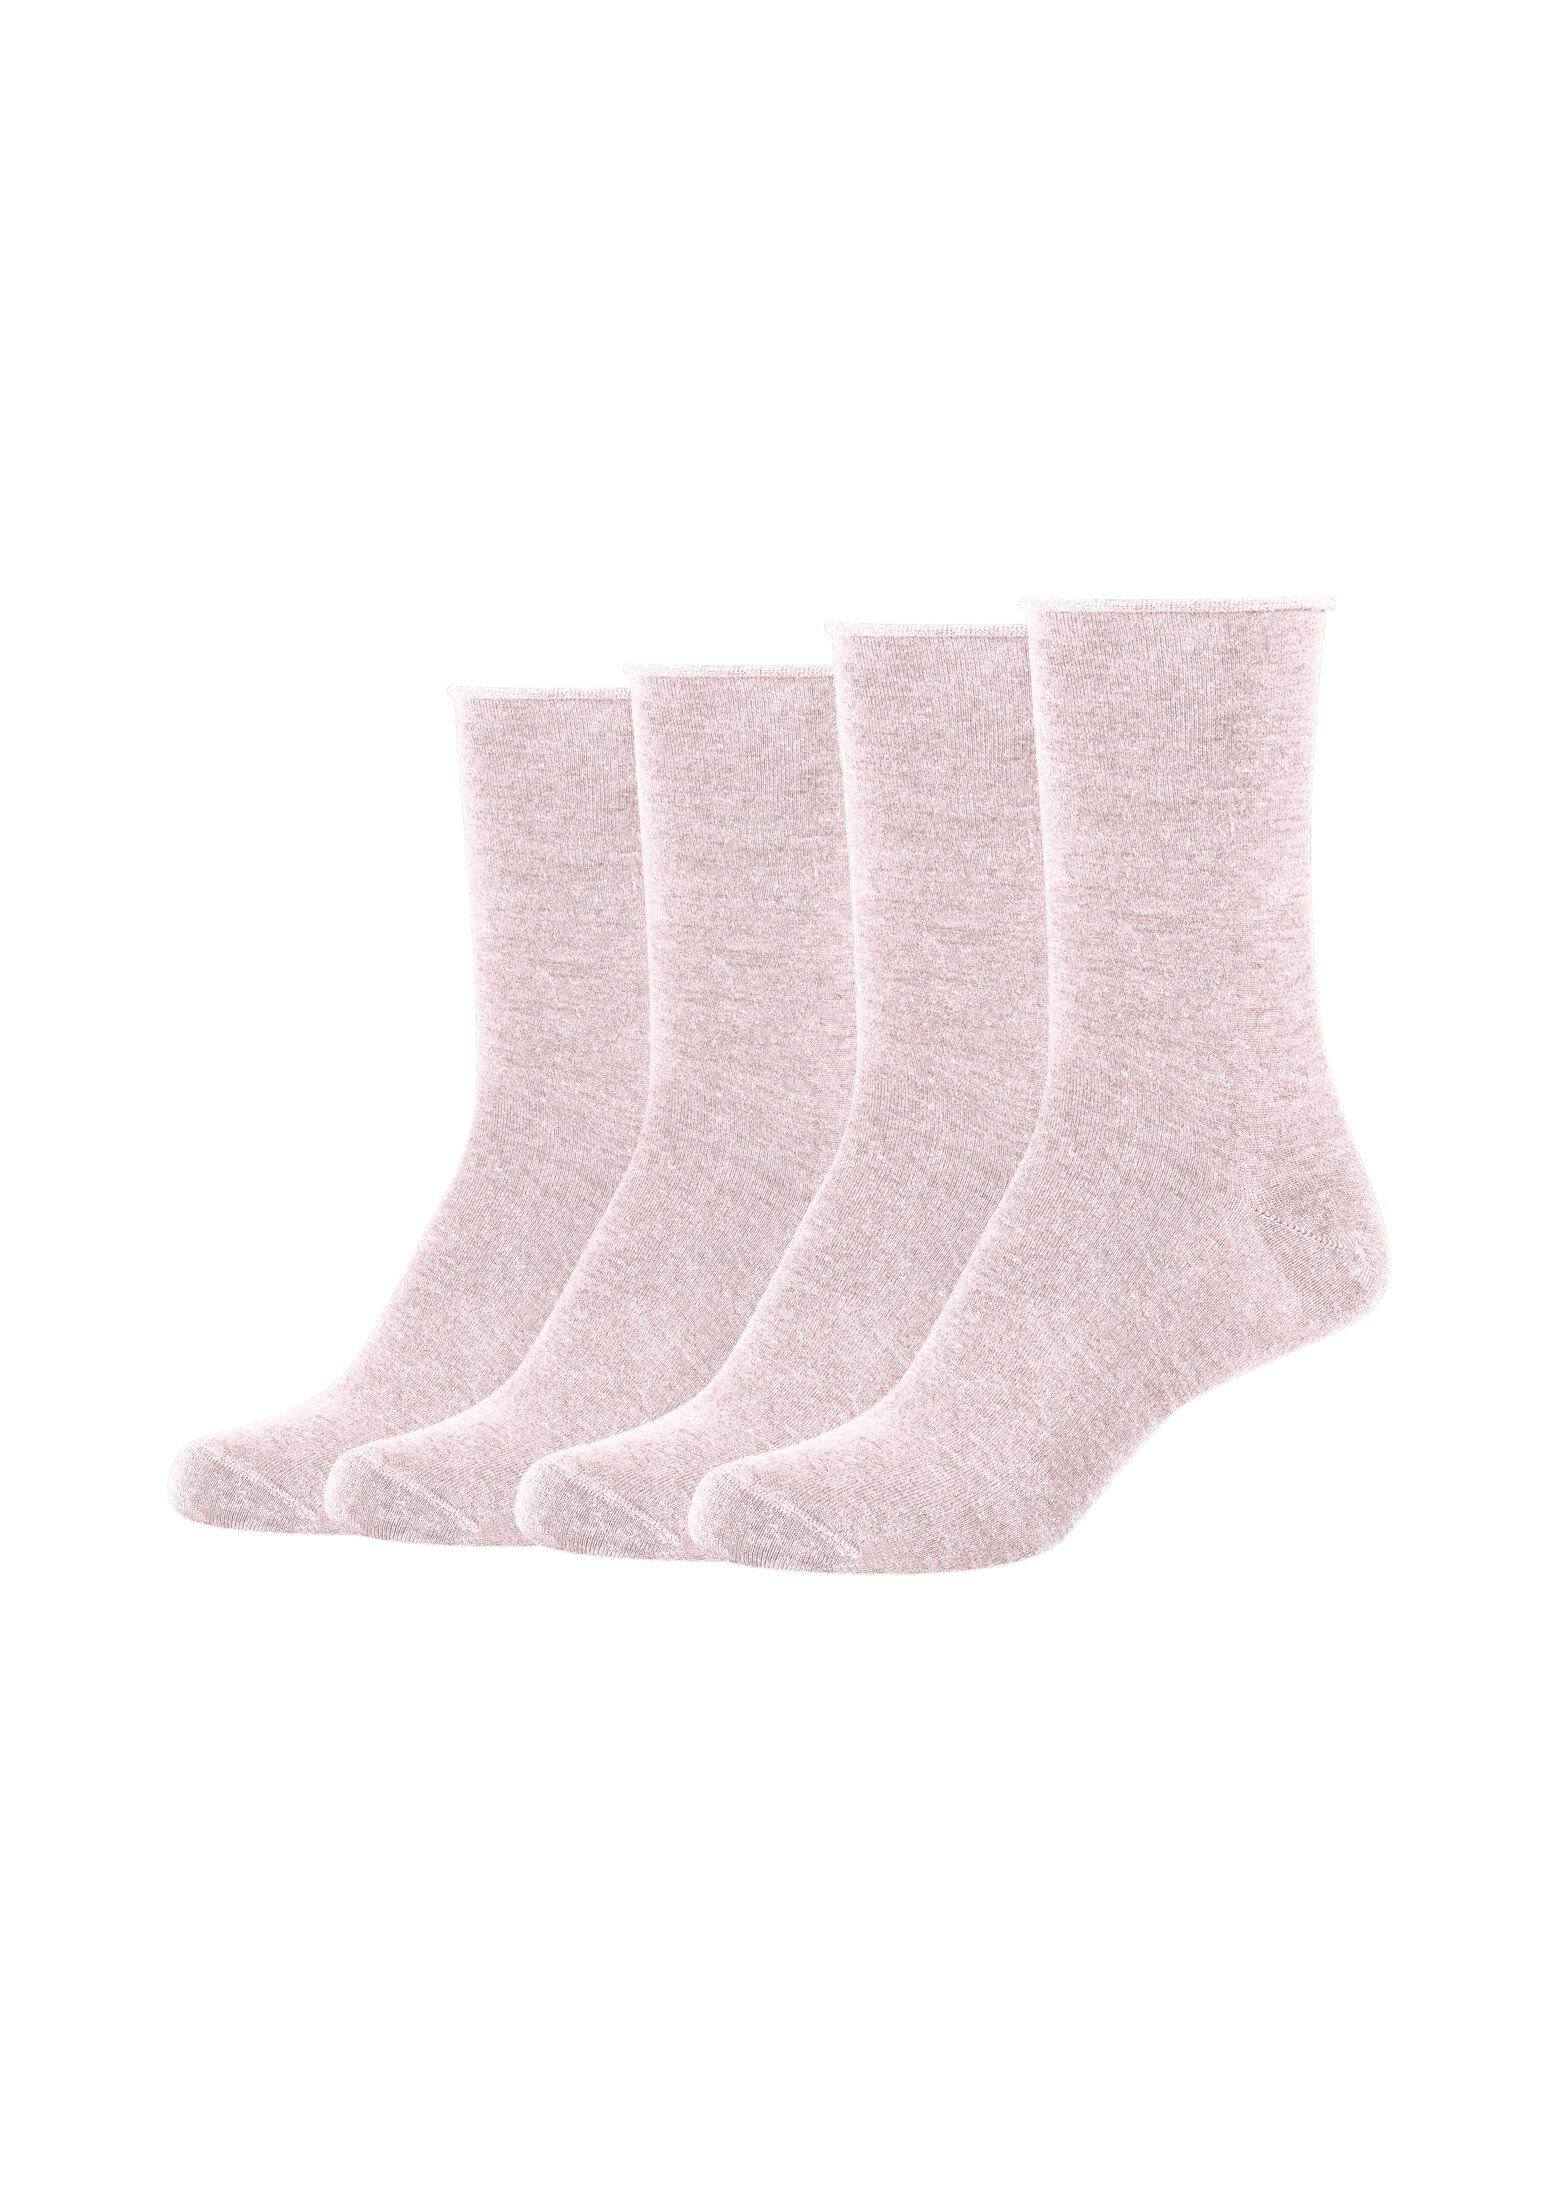 Spezial s.Oliver Socken rosé 4er Socken Pack melange